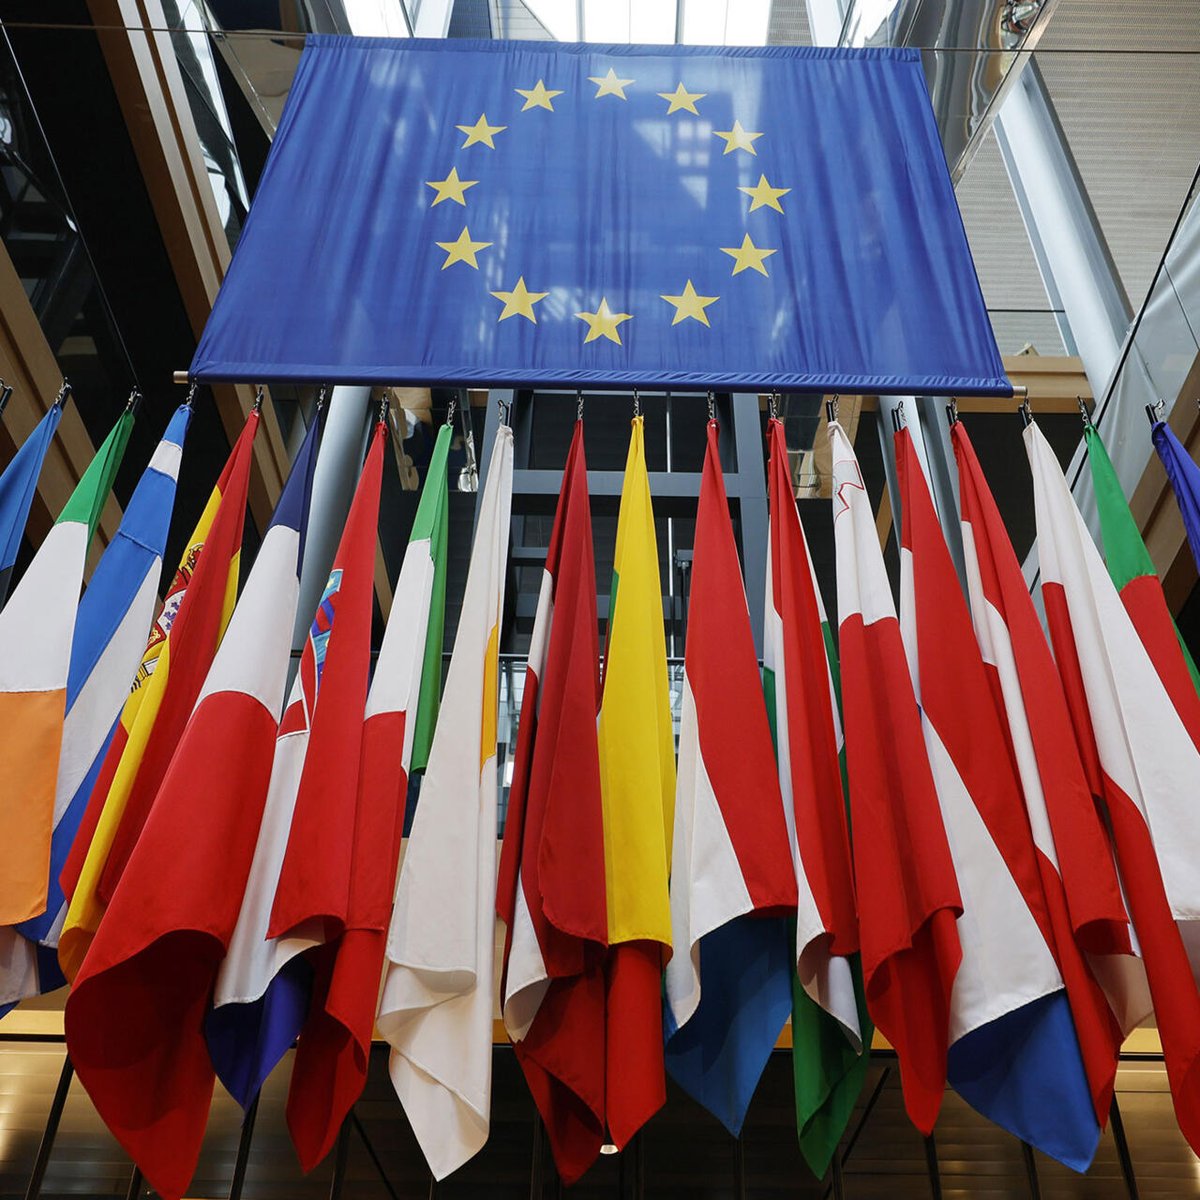 ▶️L'Europe doit-elle être plus fédérale ? 📷 📌@SylvainKahn, prof #géographie #histoire de #Europe #UE @sciencespo @ScPo_CHSP 📌@dav_cayla, MDC à l’université d’Angers, mbre @atterres 📌@GeorginaEWright, dir du programme Europe @i_montaigne ⏰17h30 TU / 19h30 Paris @RFI